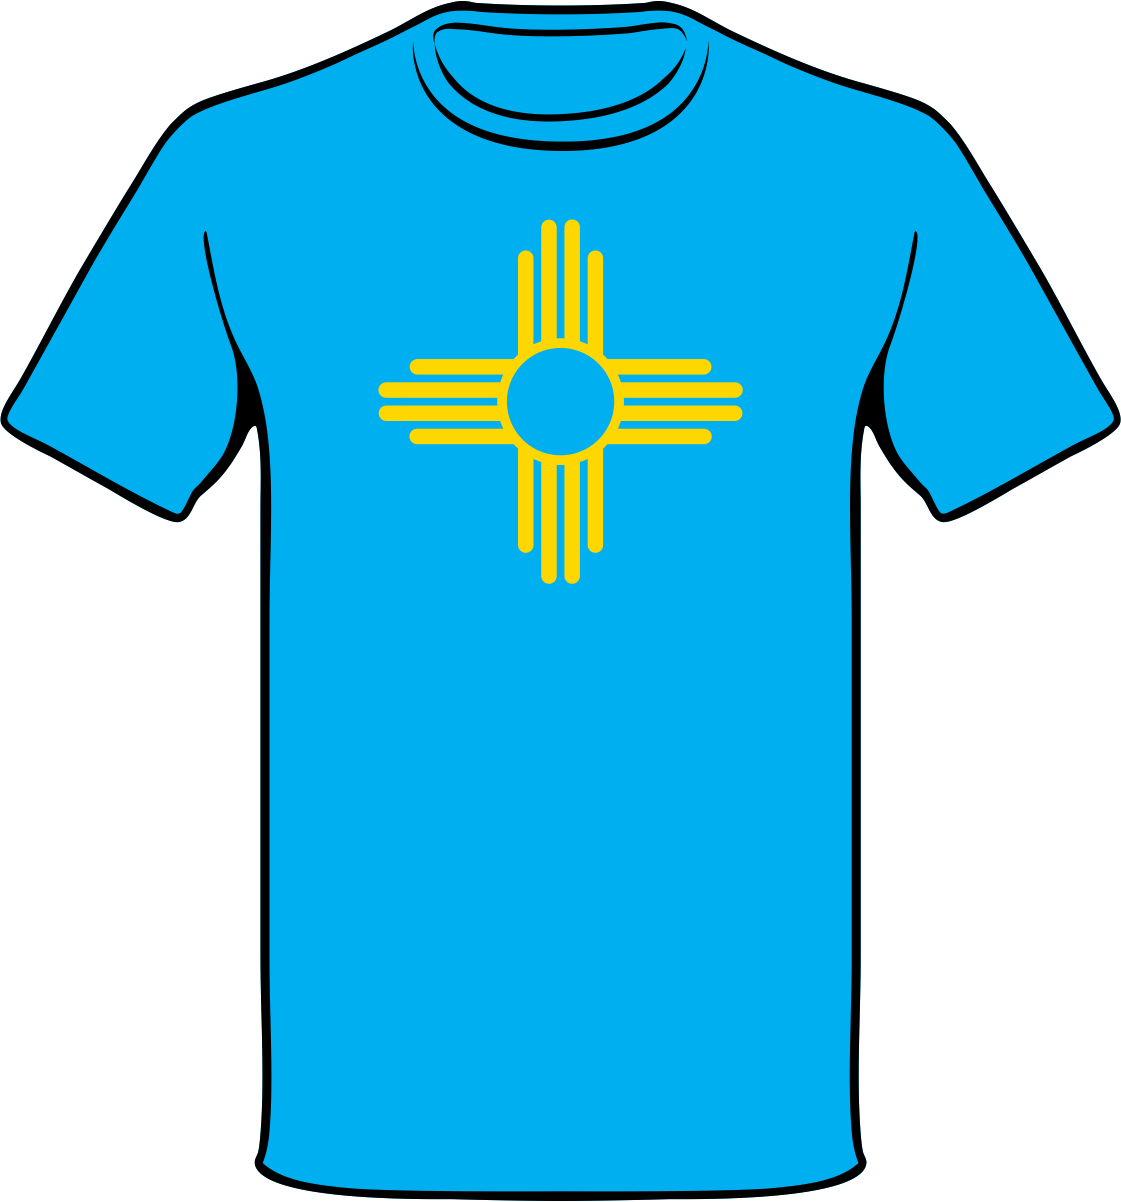 Nm Zia Symbol Shirt - Zia Symbol (1121x1202)